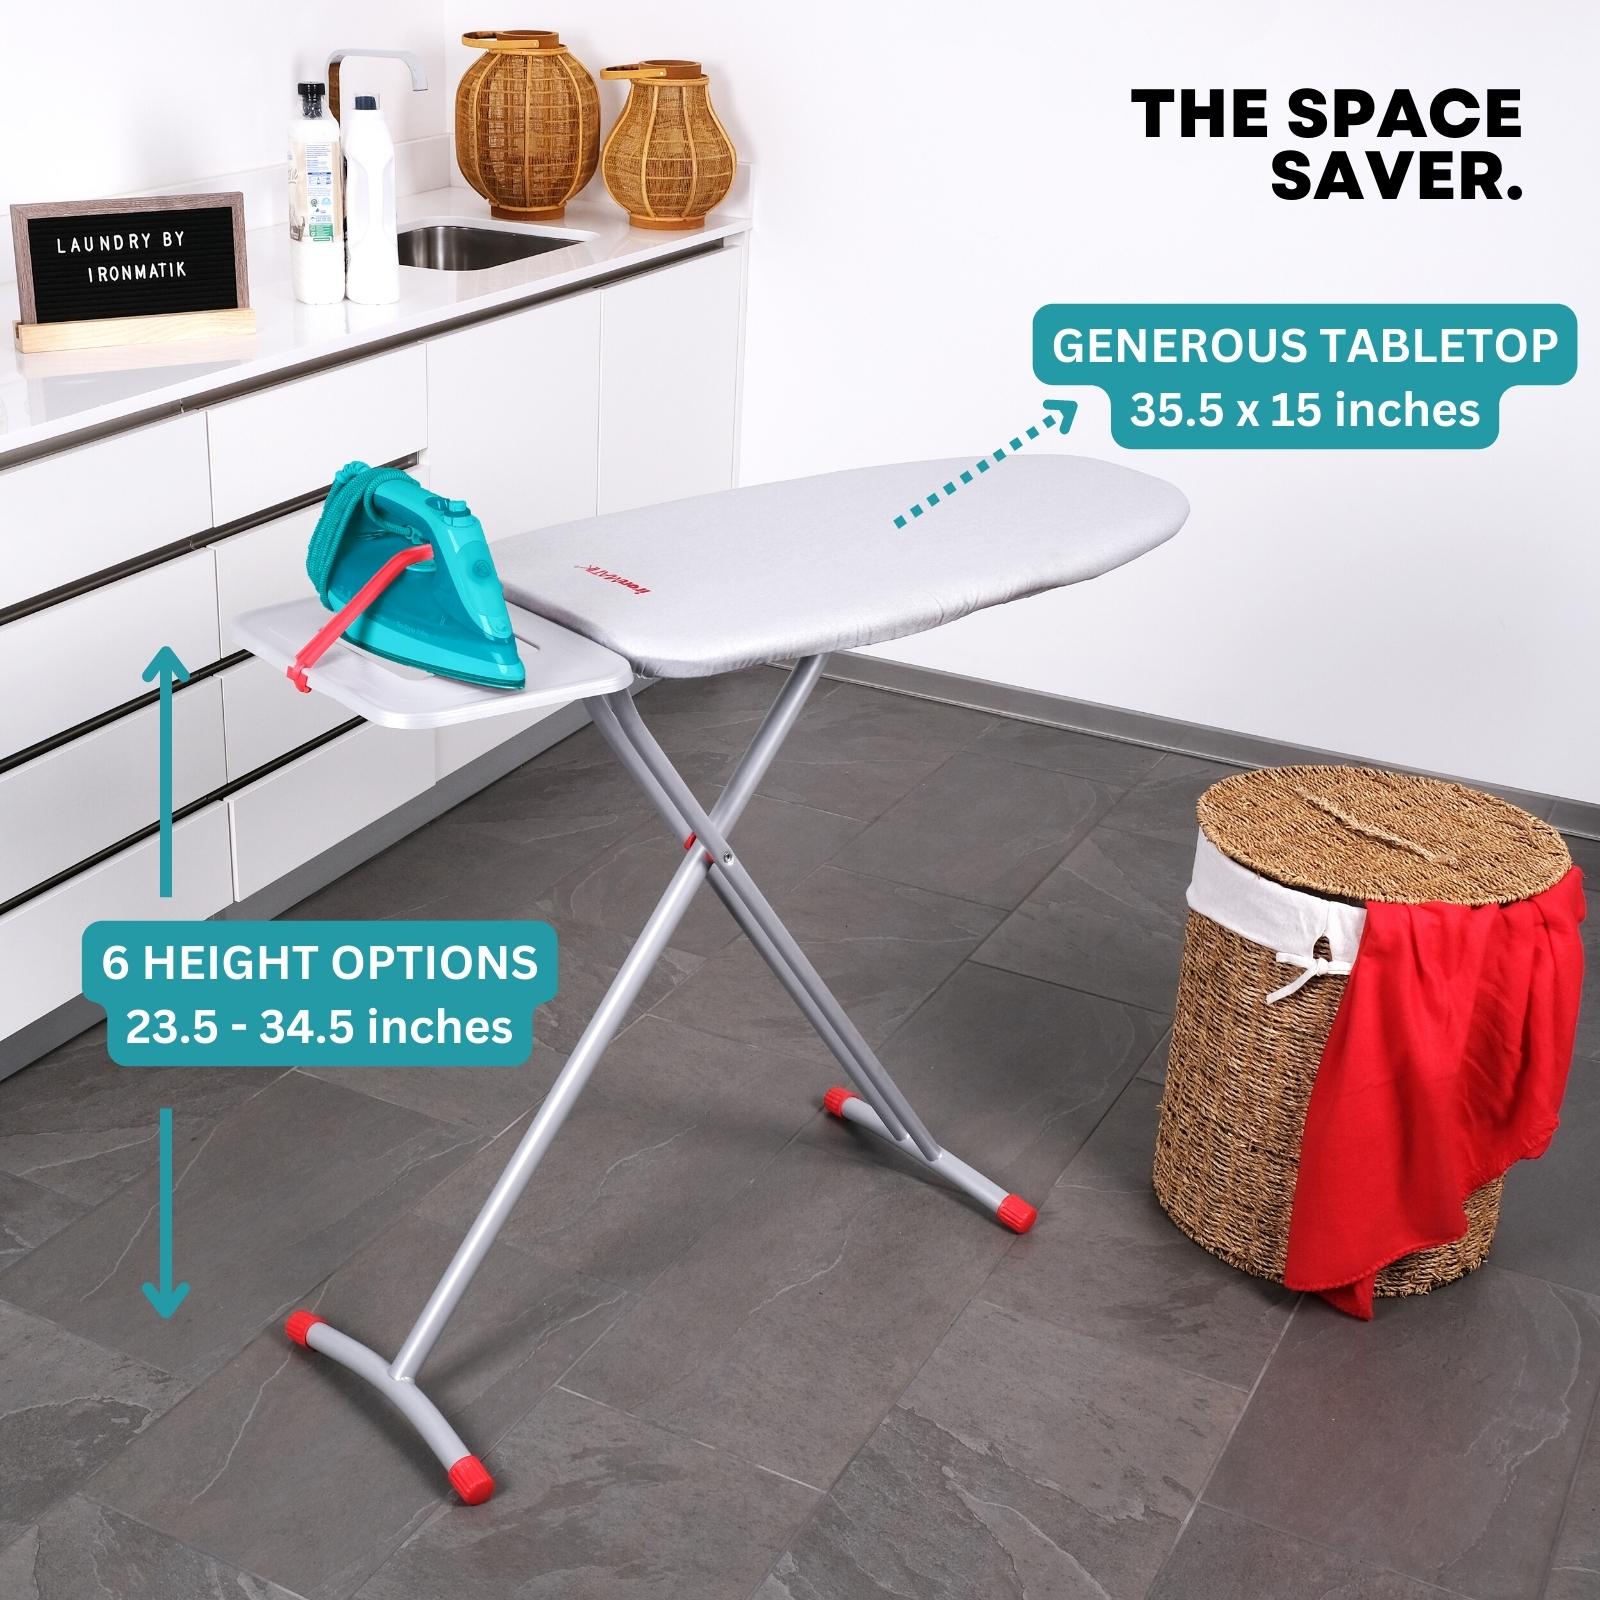 Space Saver Ironing Board - Hanger Extender – ironMATIK